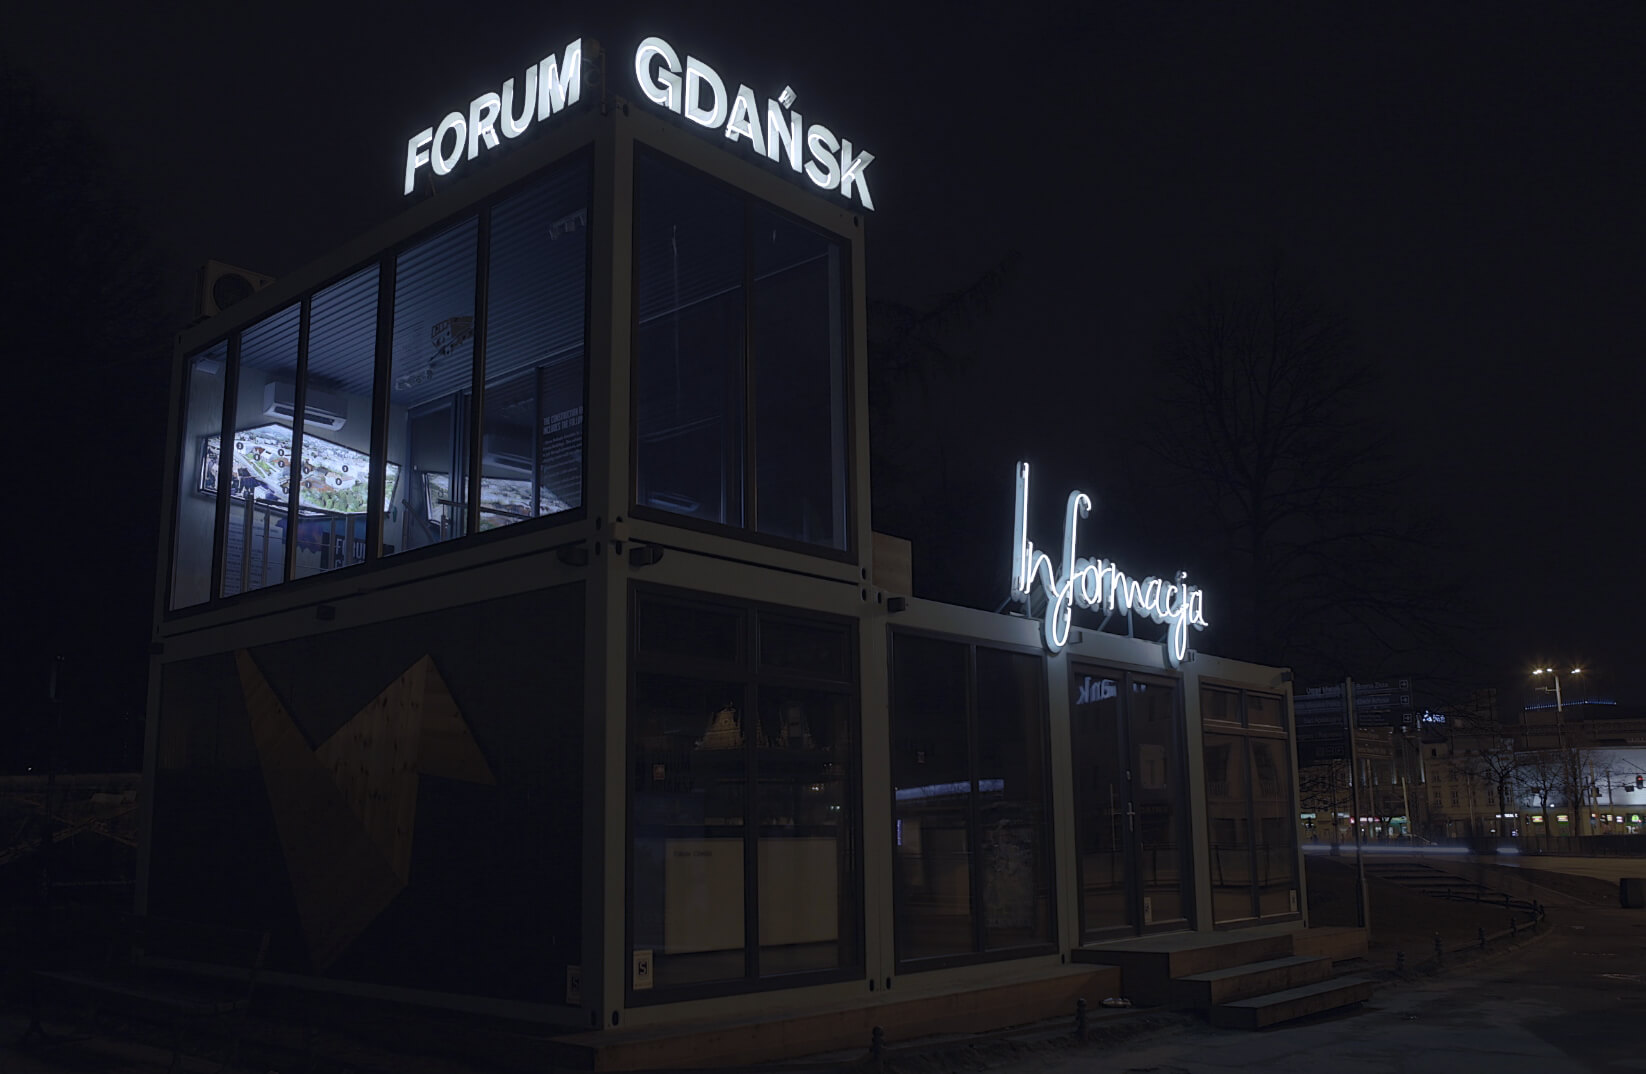 Forum Gdańsk informacja - Forum Gdańsk - litery świetlne z neonem, zamontowane na stelażu, umieszczone na dachu budynku